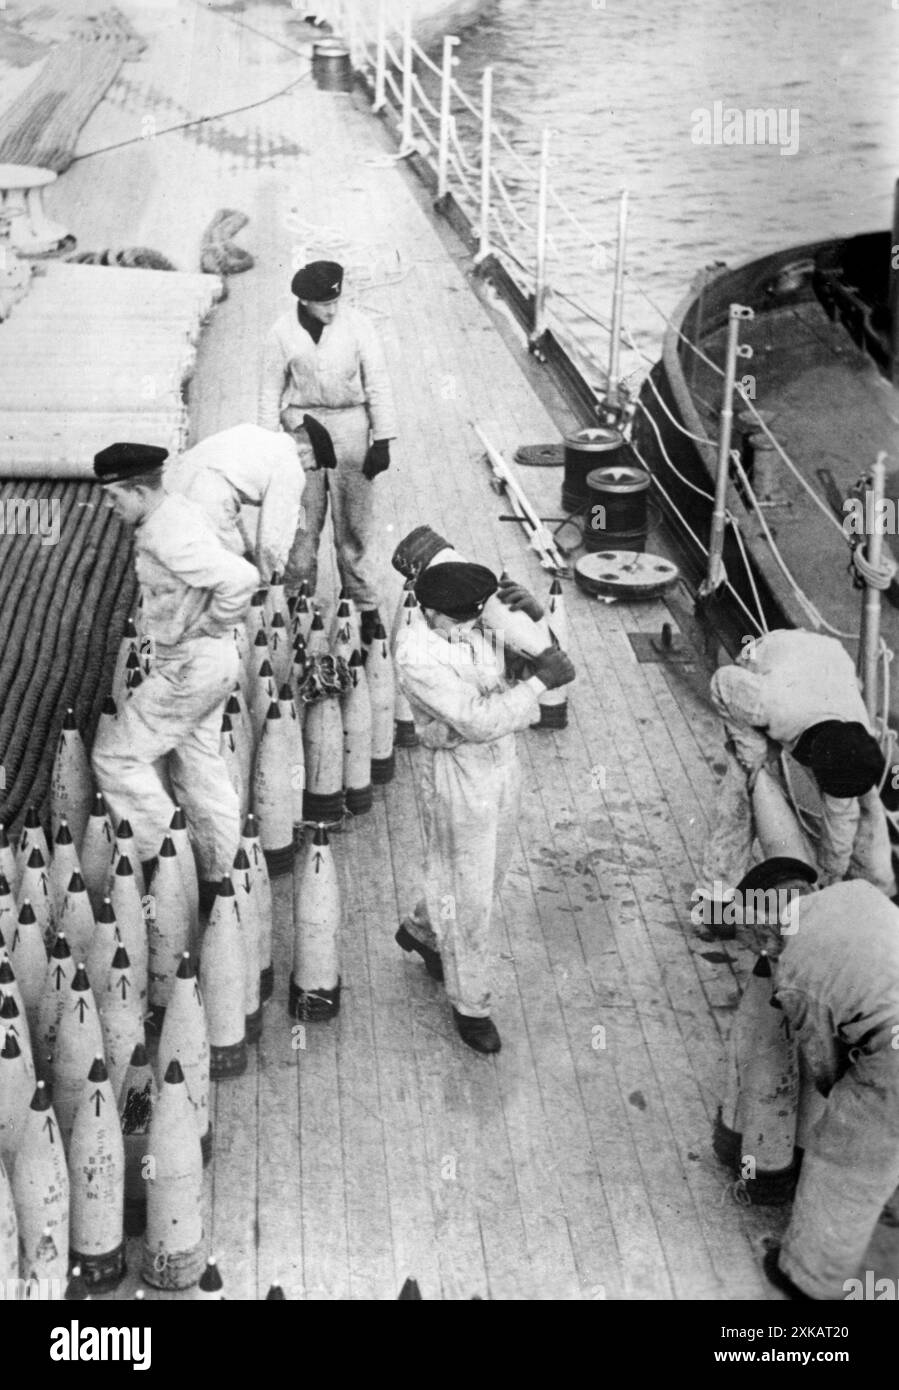 Seeleute bringen Munition an Bord eines deutschen Kriegsschiffs, bevor es in See geht. Foto: Guardian. [Automatisierte Übersetzung] Stockfoto